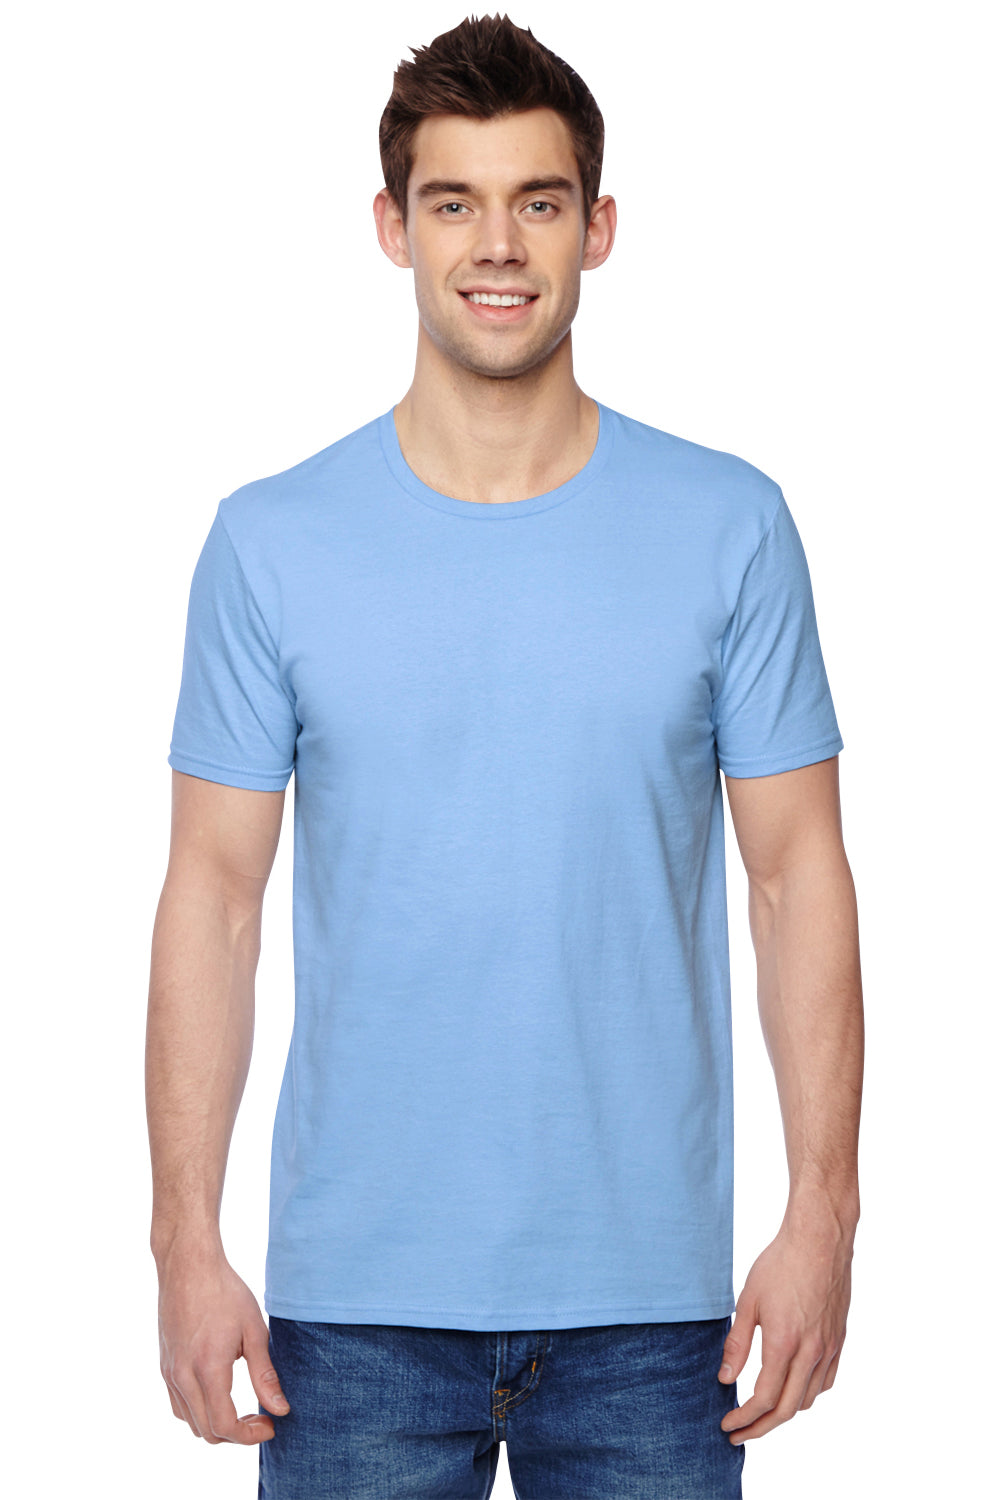 Fruit Of The Loom SF45R Mens Sofspun Jersey Short Sleeve Crewneck T-Shirt Light Blue Front